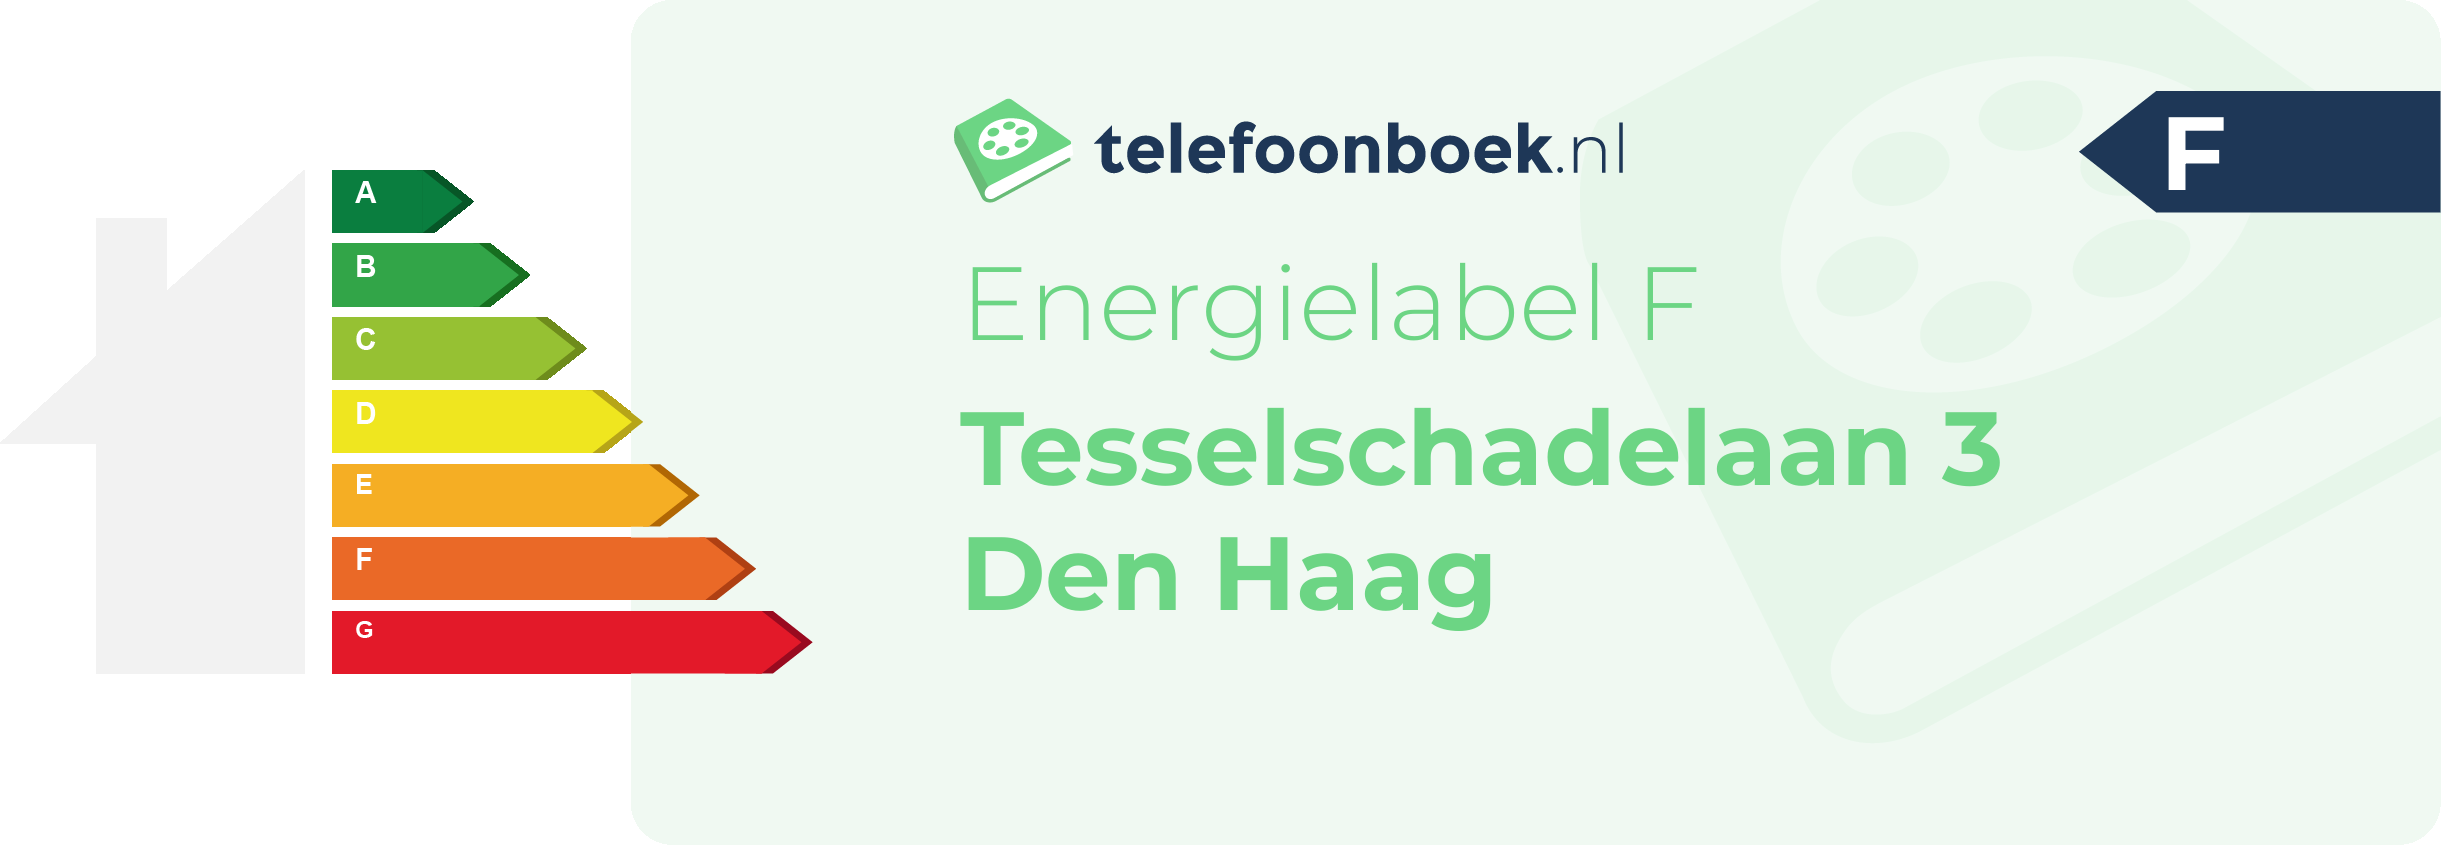 Energielabel Tesselschadelaan 3 Den Haag